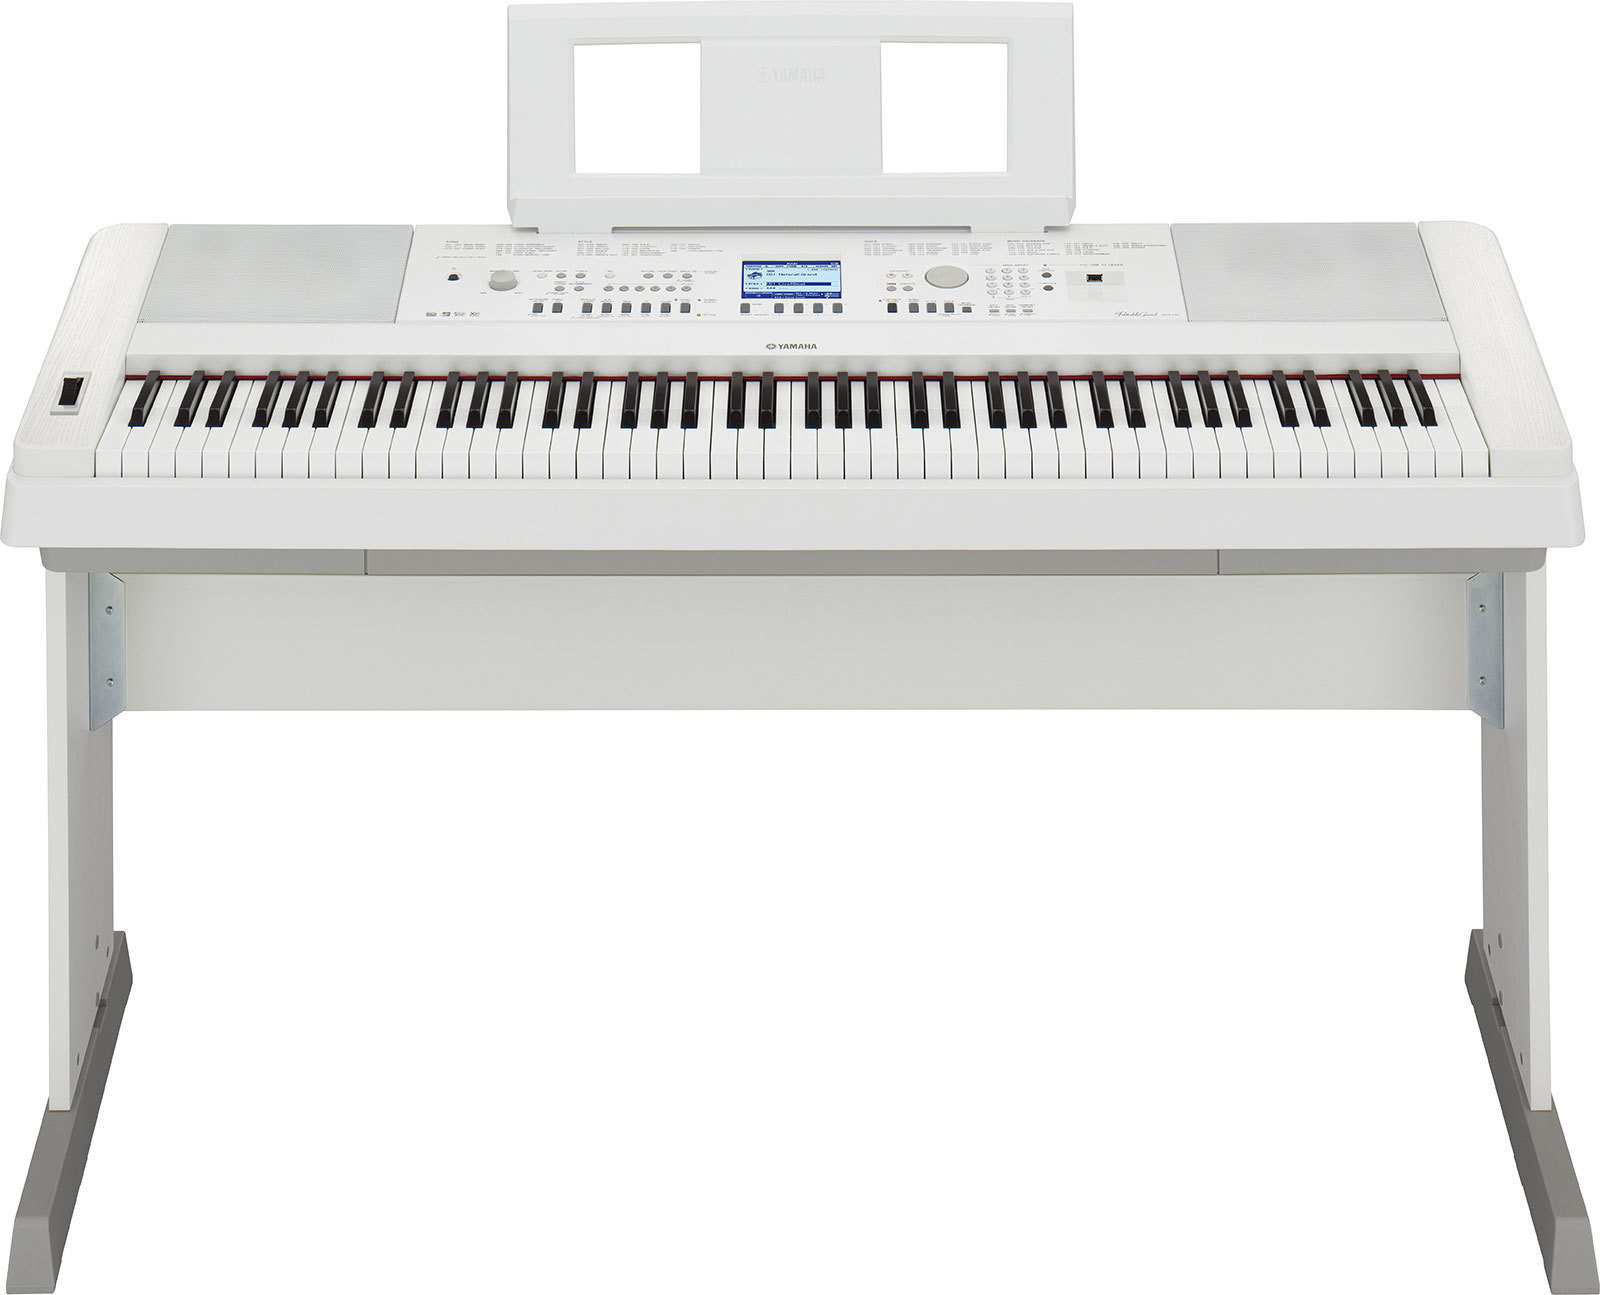 Digitale piano Yamaha DGX-650 White